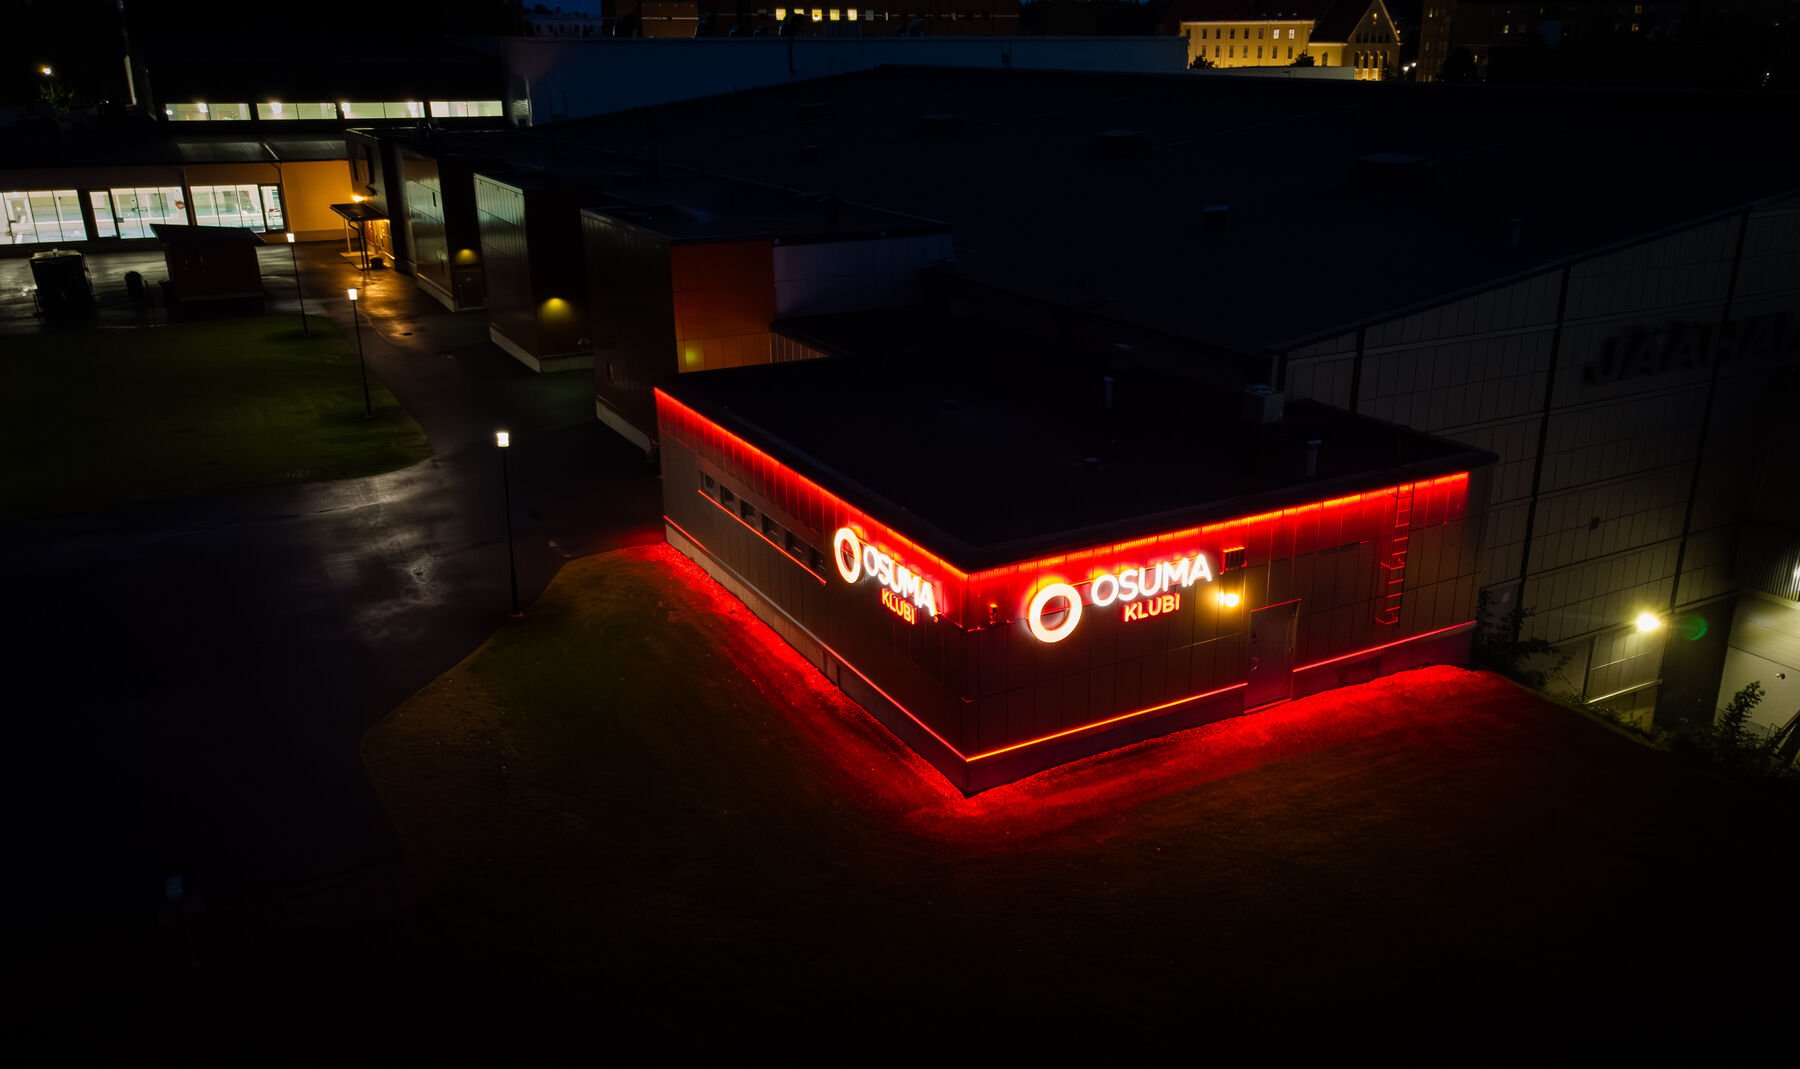 Olvi-areenan toisella sivulla sijaitseva Osuma-klubi on valaistu valopesureilla, jotka hohkaavat Osuman punaista väriä. 